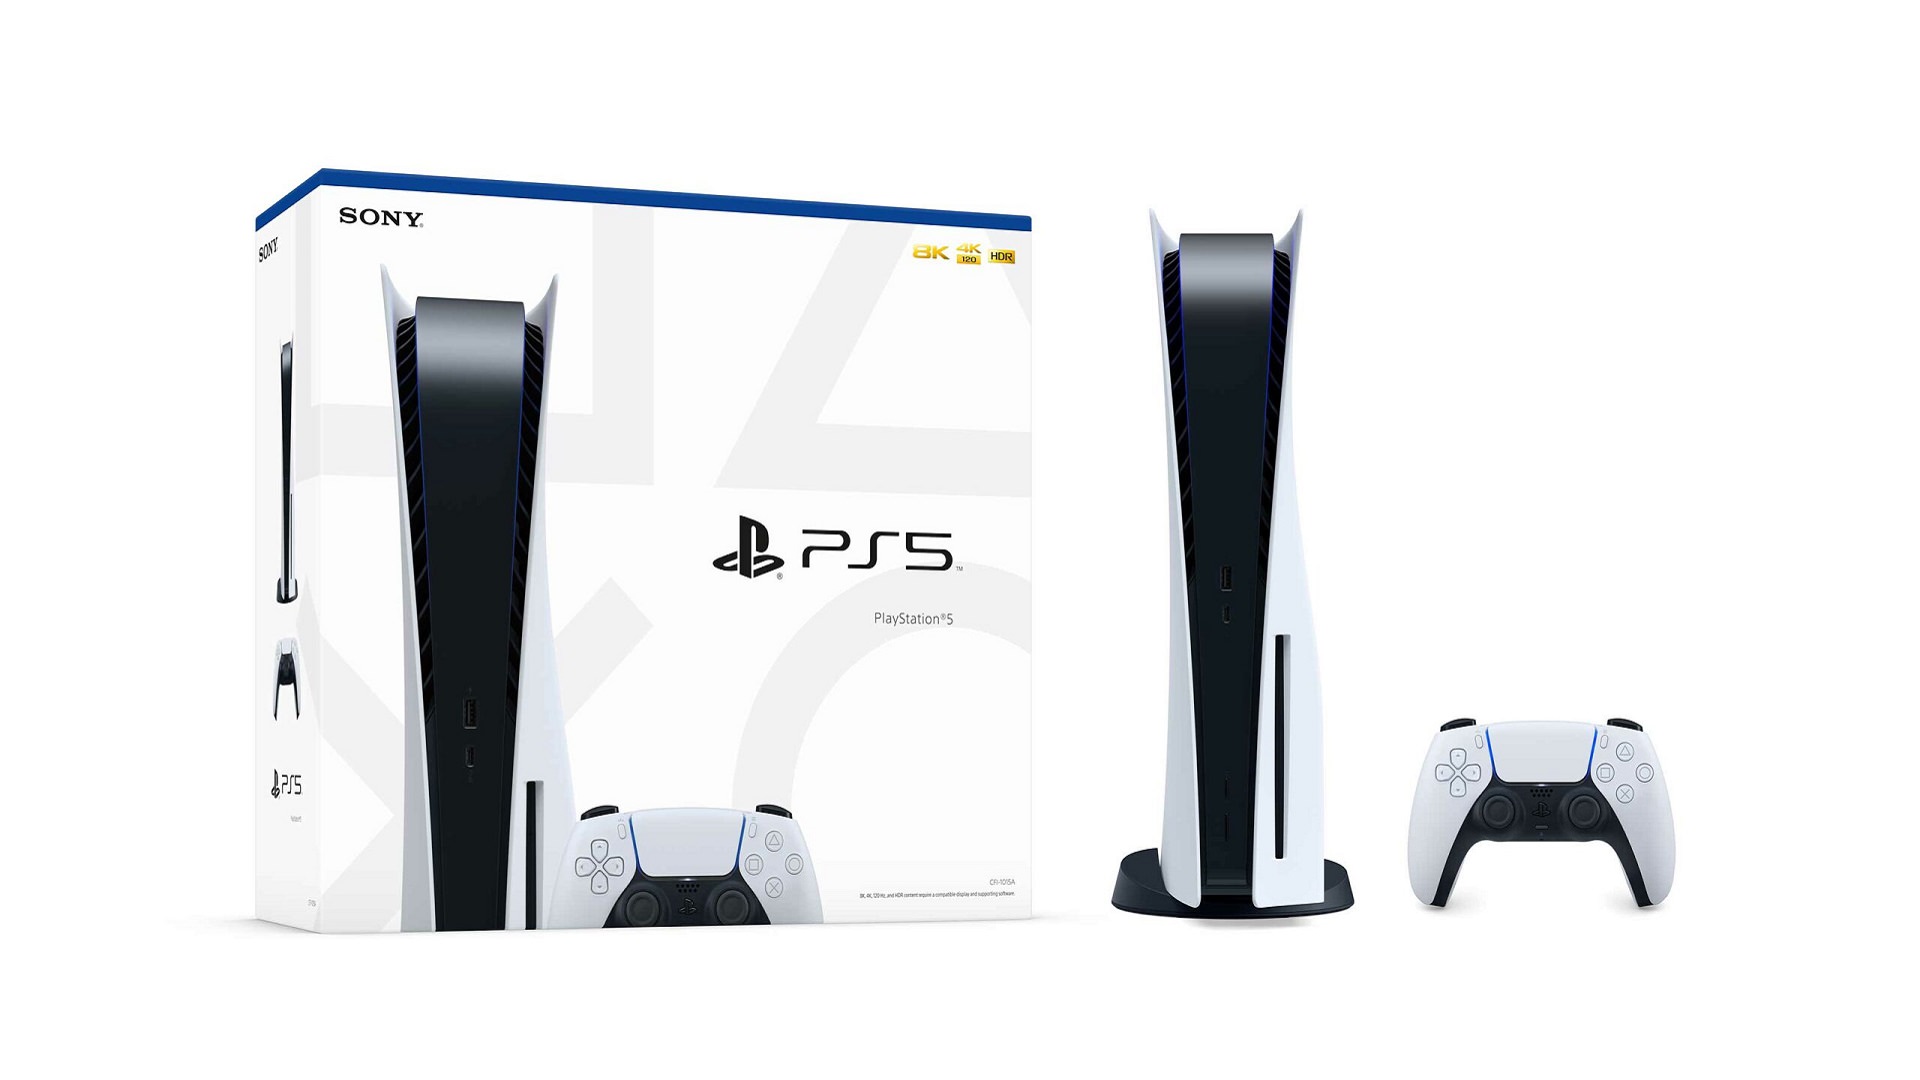 روی جعبه پلی استیشن 5 نحوه انتقال داده‌ها از PS4 آموزش داده شده است